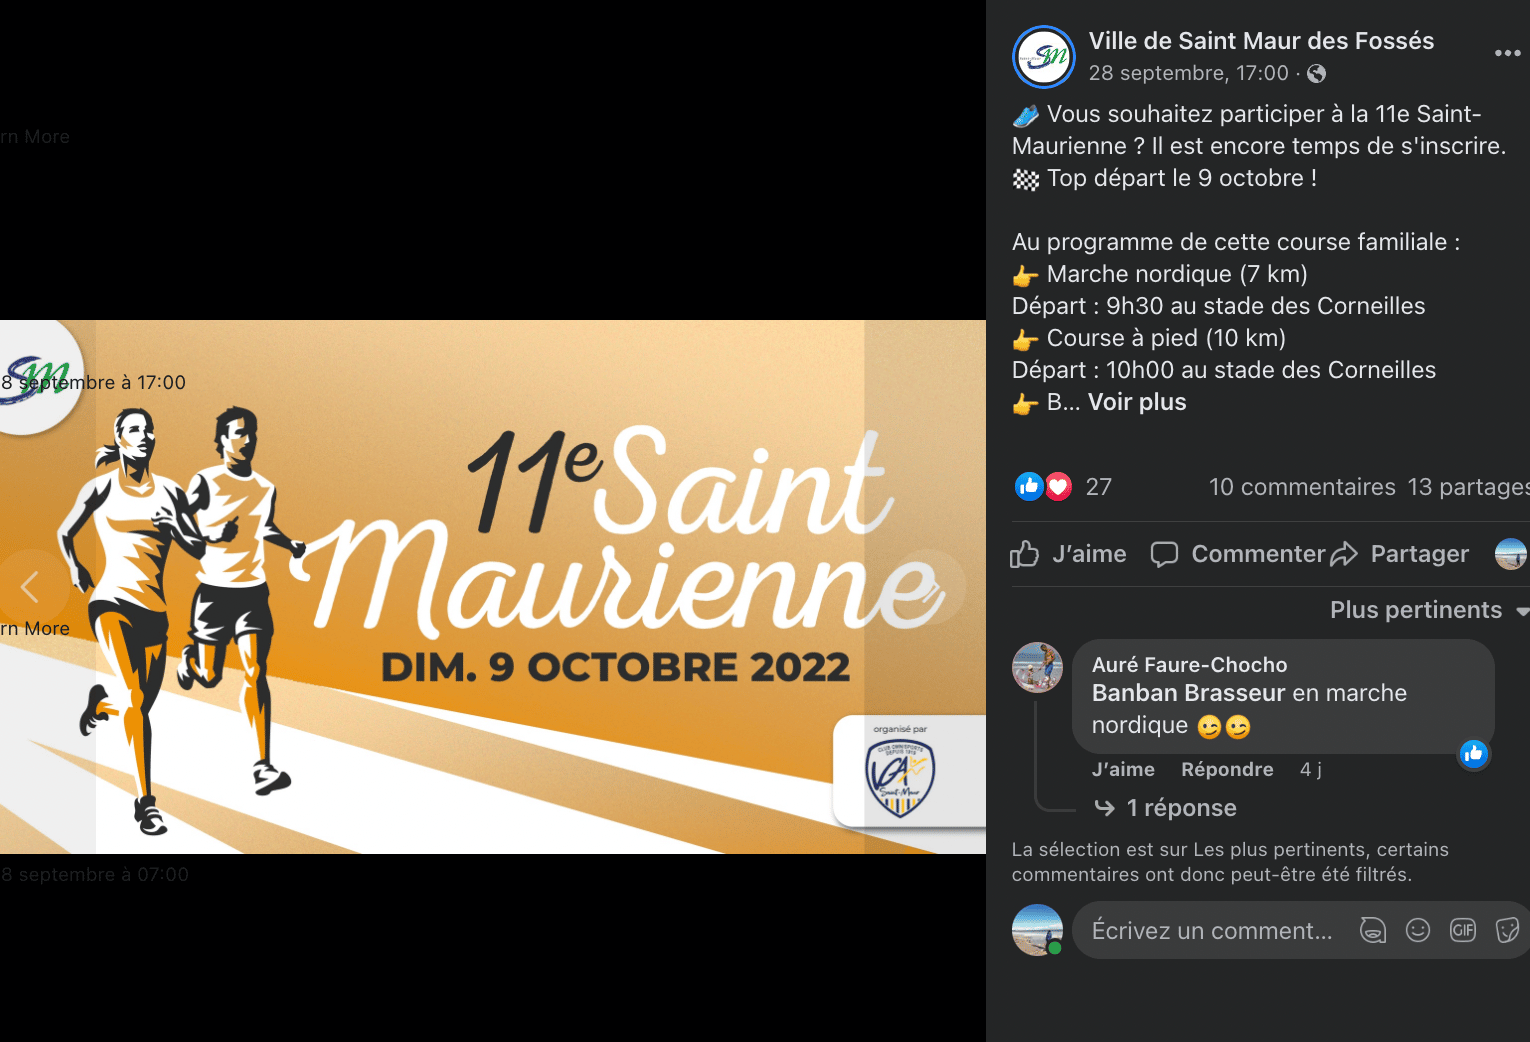 Collectivité locale - Saint-Maur sur Facebook